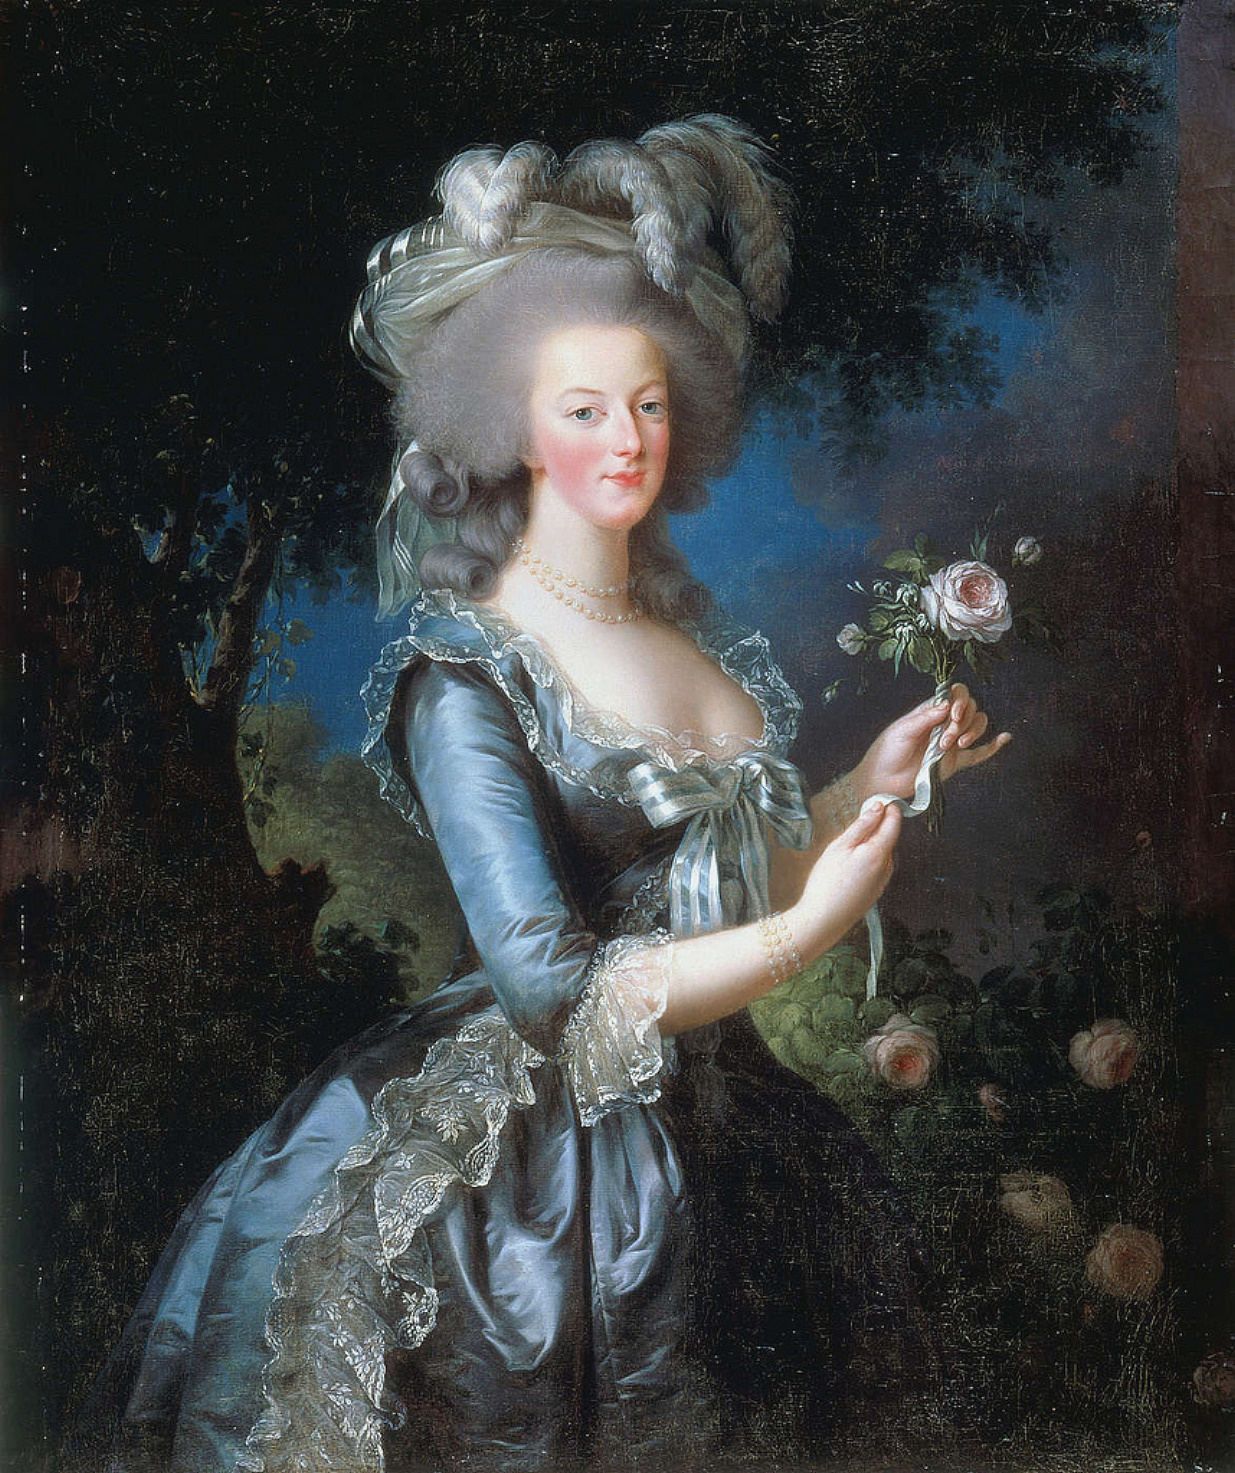  瑪麗·安托瓦內特的肖像 by Élisabeth Vigee Le Brun - 1783年 